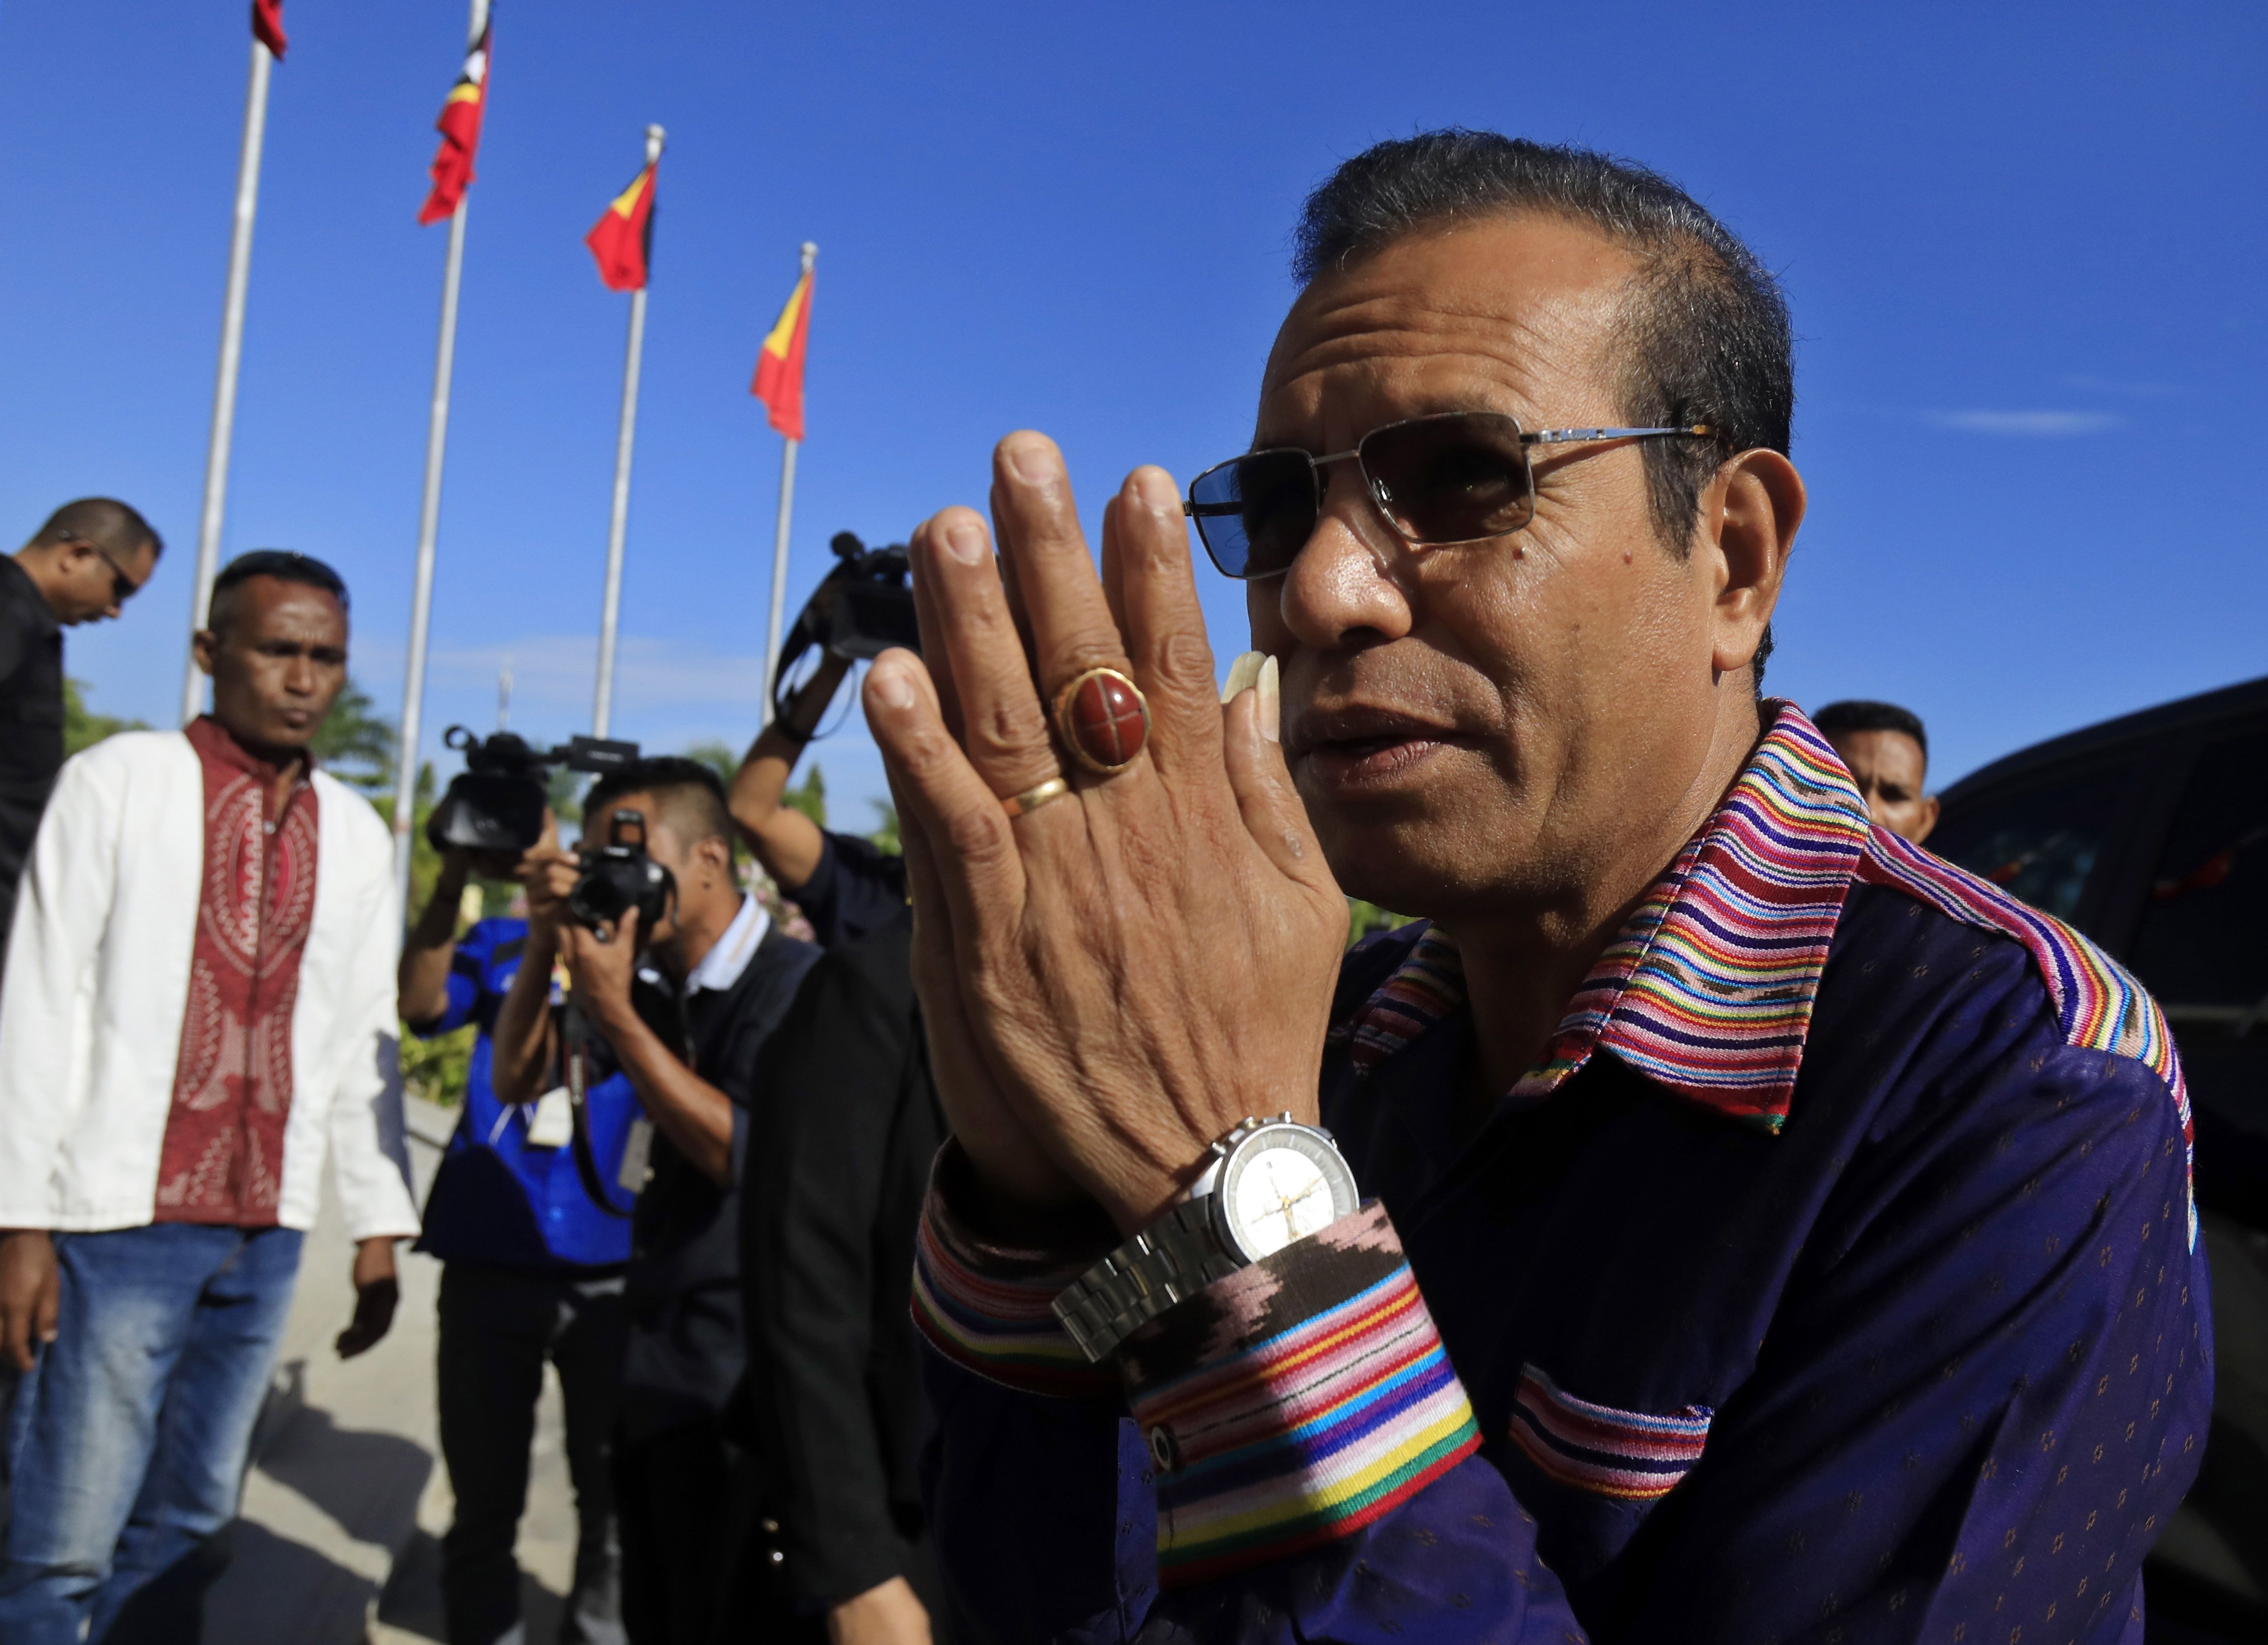 PR timorense só vai dar posse a parte do VIII Governo constitucional segundo lista oficial